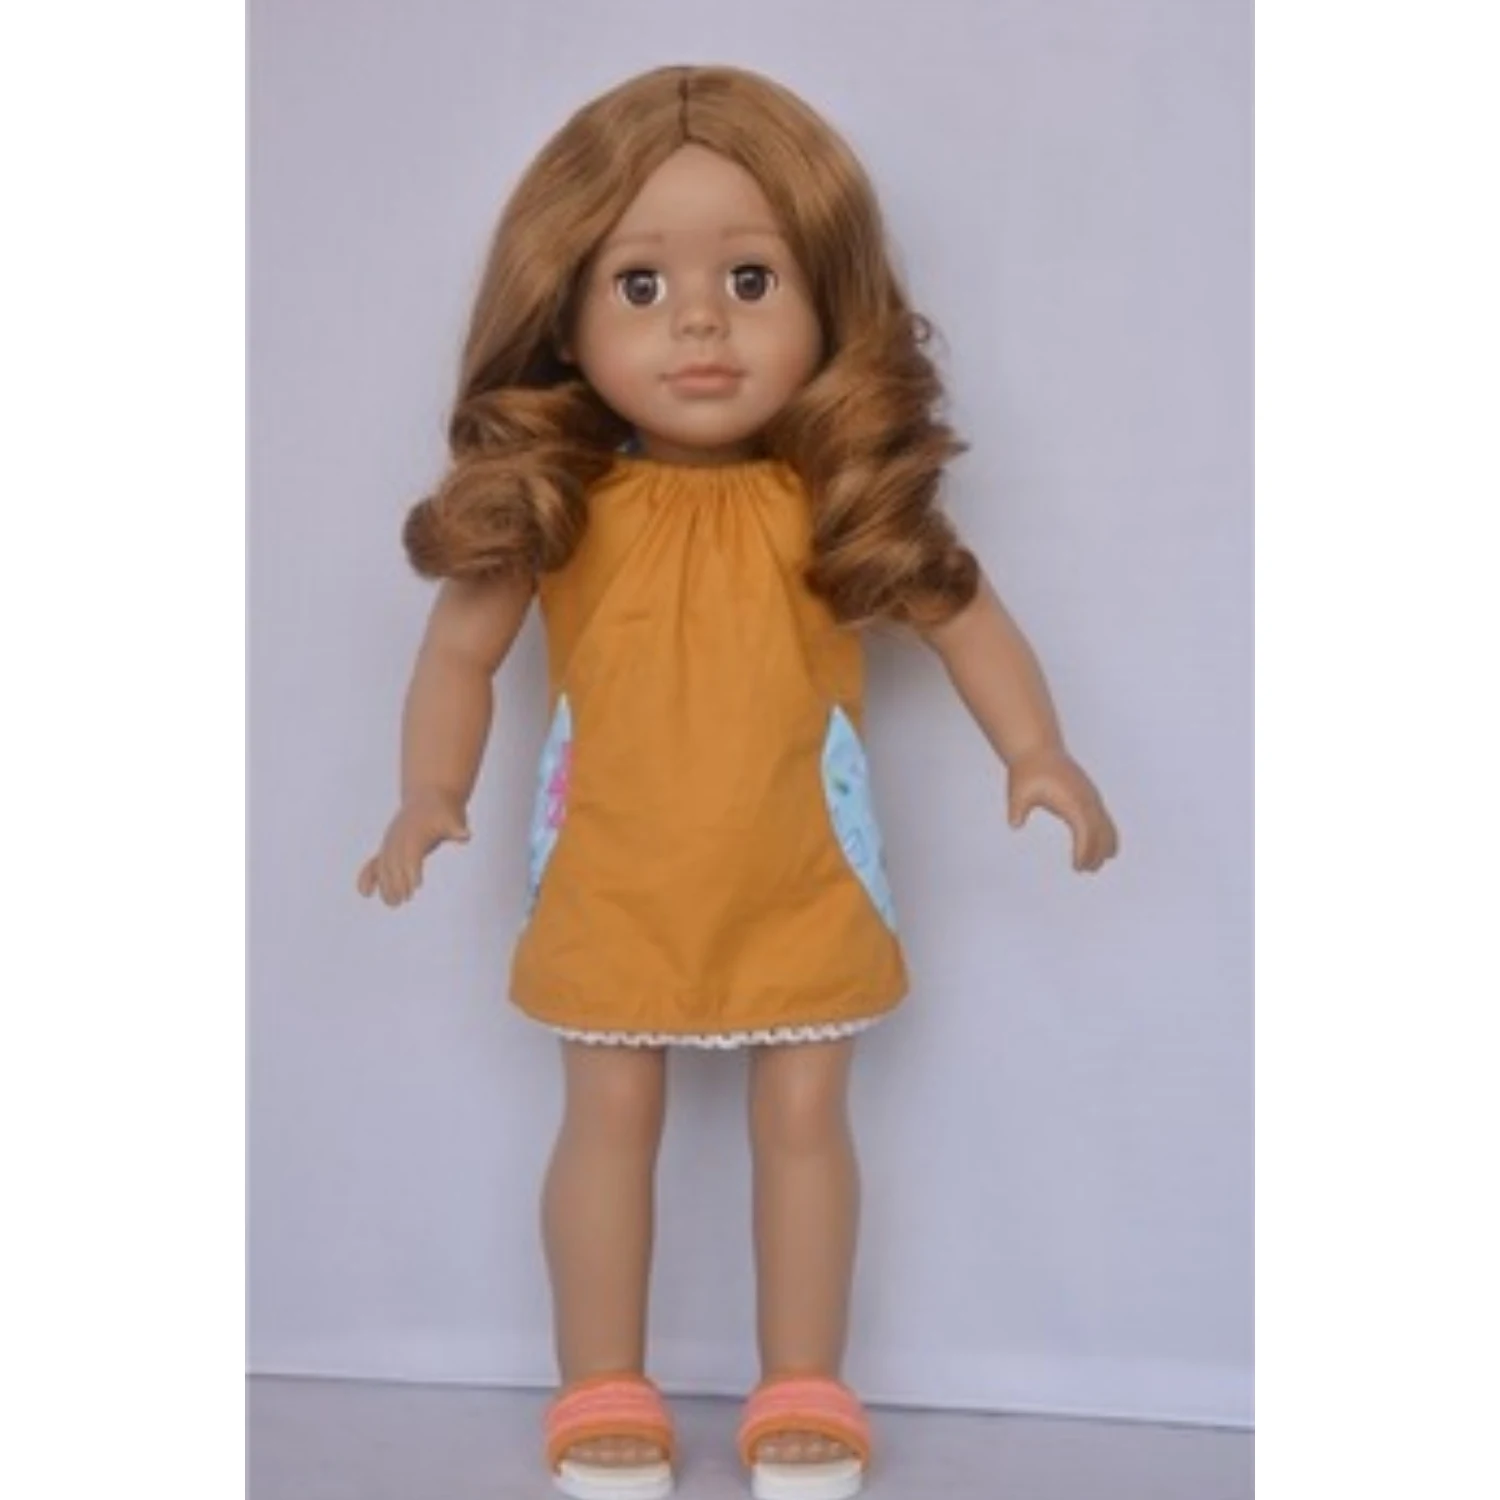 16 若い裸のアメリカの女の子の人形メーカーを購入する Buy 裸の女の子の人形 16 若い女の子の人形 アメリカの女の子の人形を購入する Product On Alibaba Com